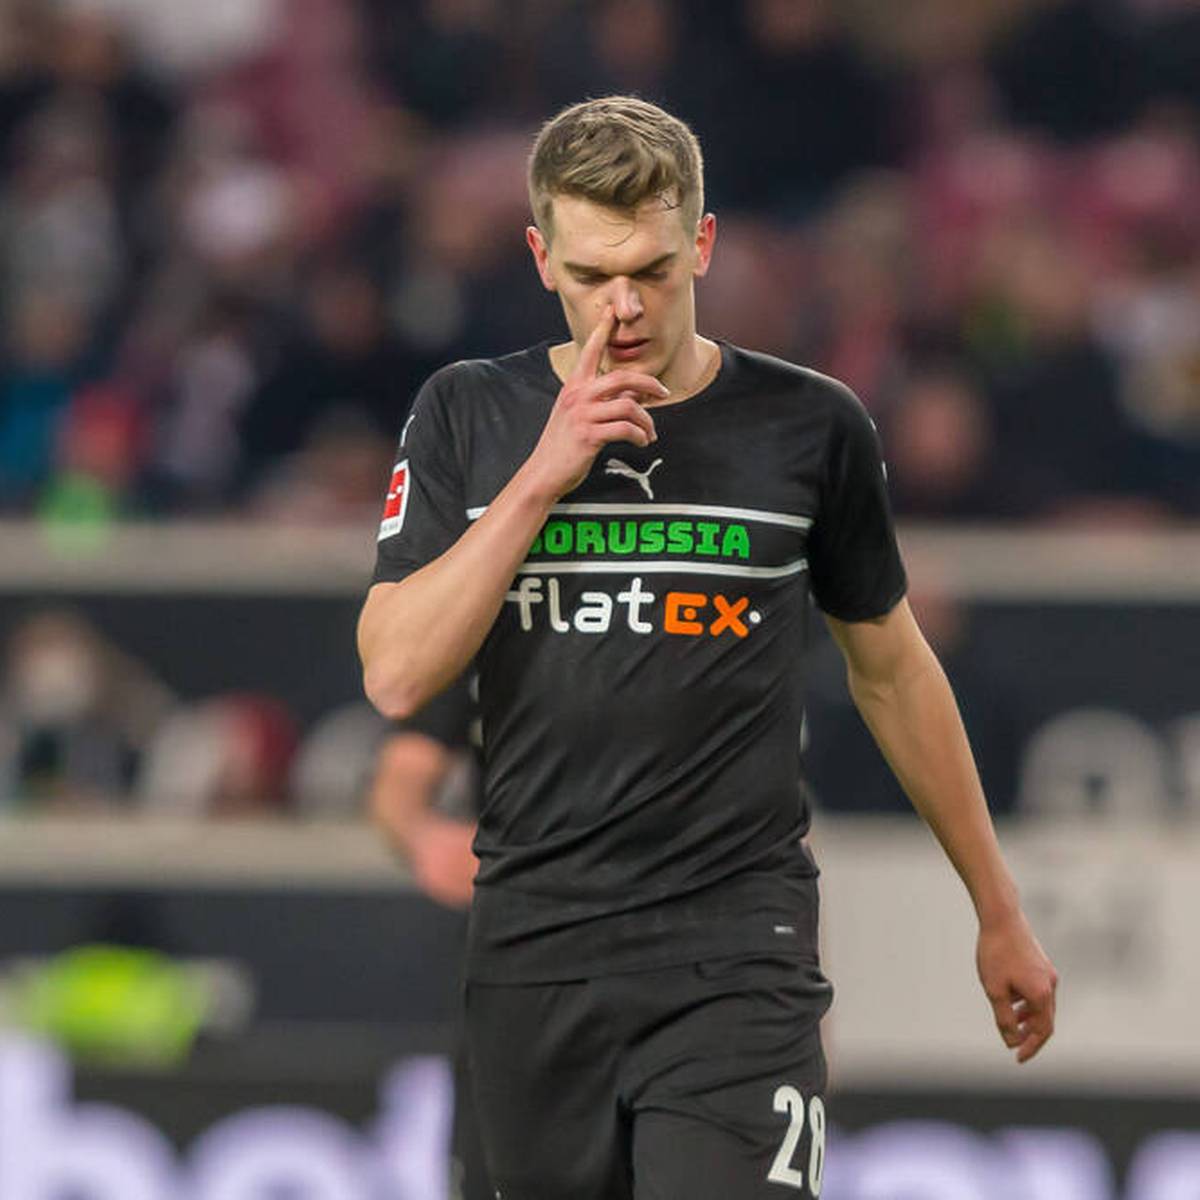 Nach den Stationen in Dortmund und Mönchengladbach kehrt Matthias Ginter zu seinem Jugendverein SC Freiburg zurück. Für seine weitere Karriere hat der selbstkritische Nationalspieler einen genauen Plan.